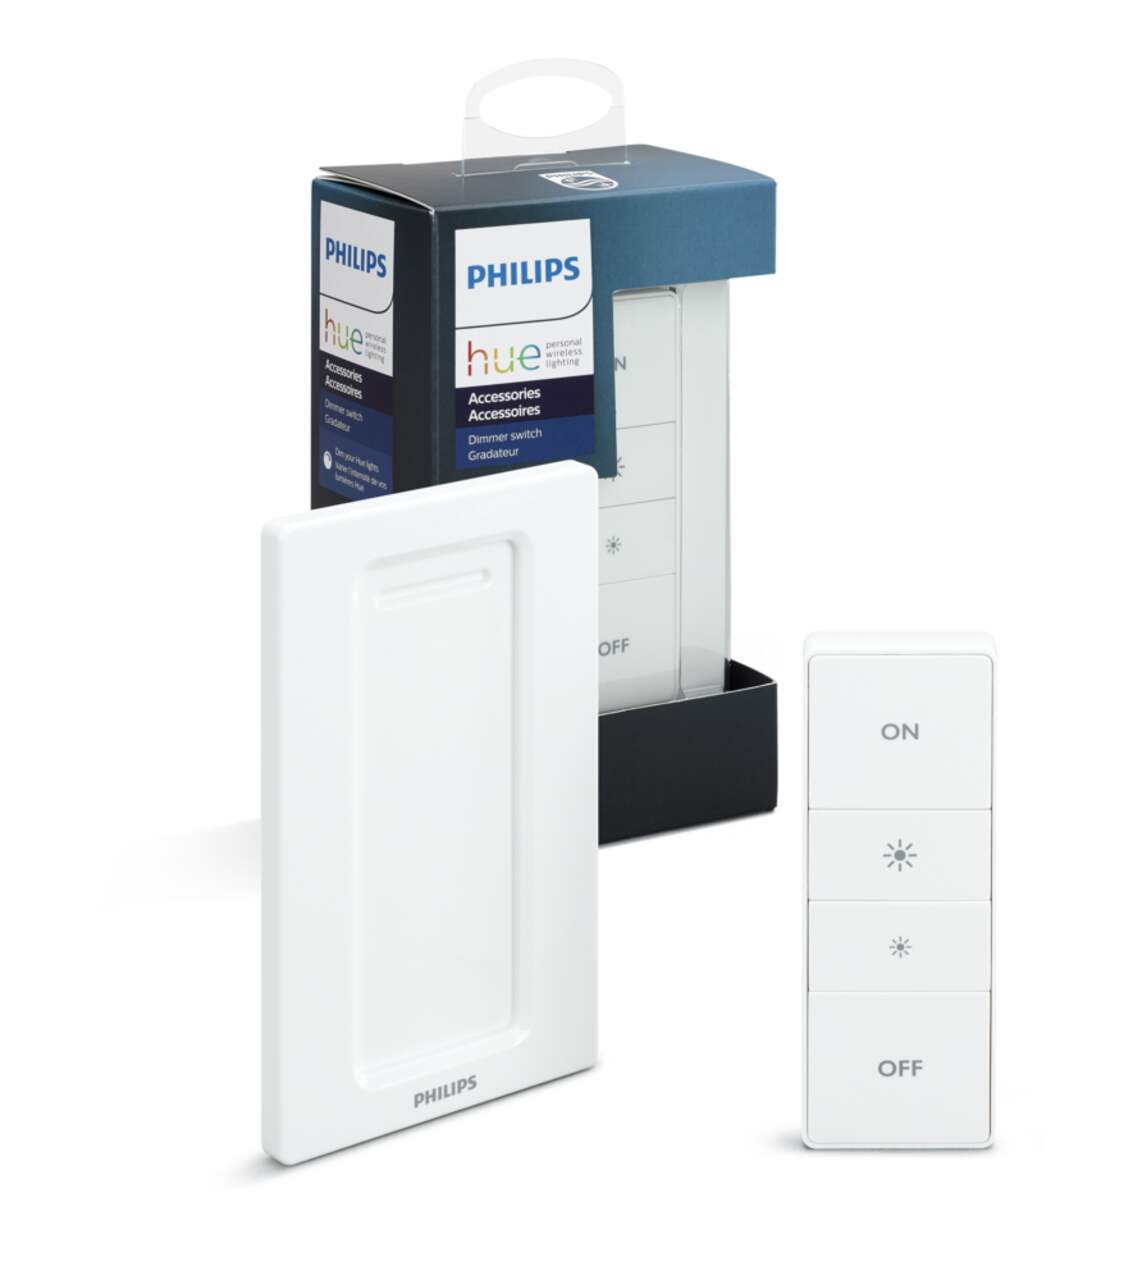 Philips Hue Dimmer switch - Accessoire éclairage connecté - LDLC